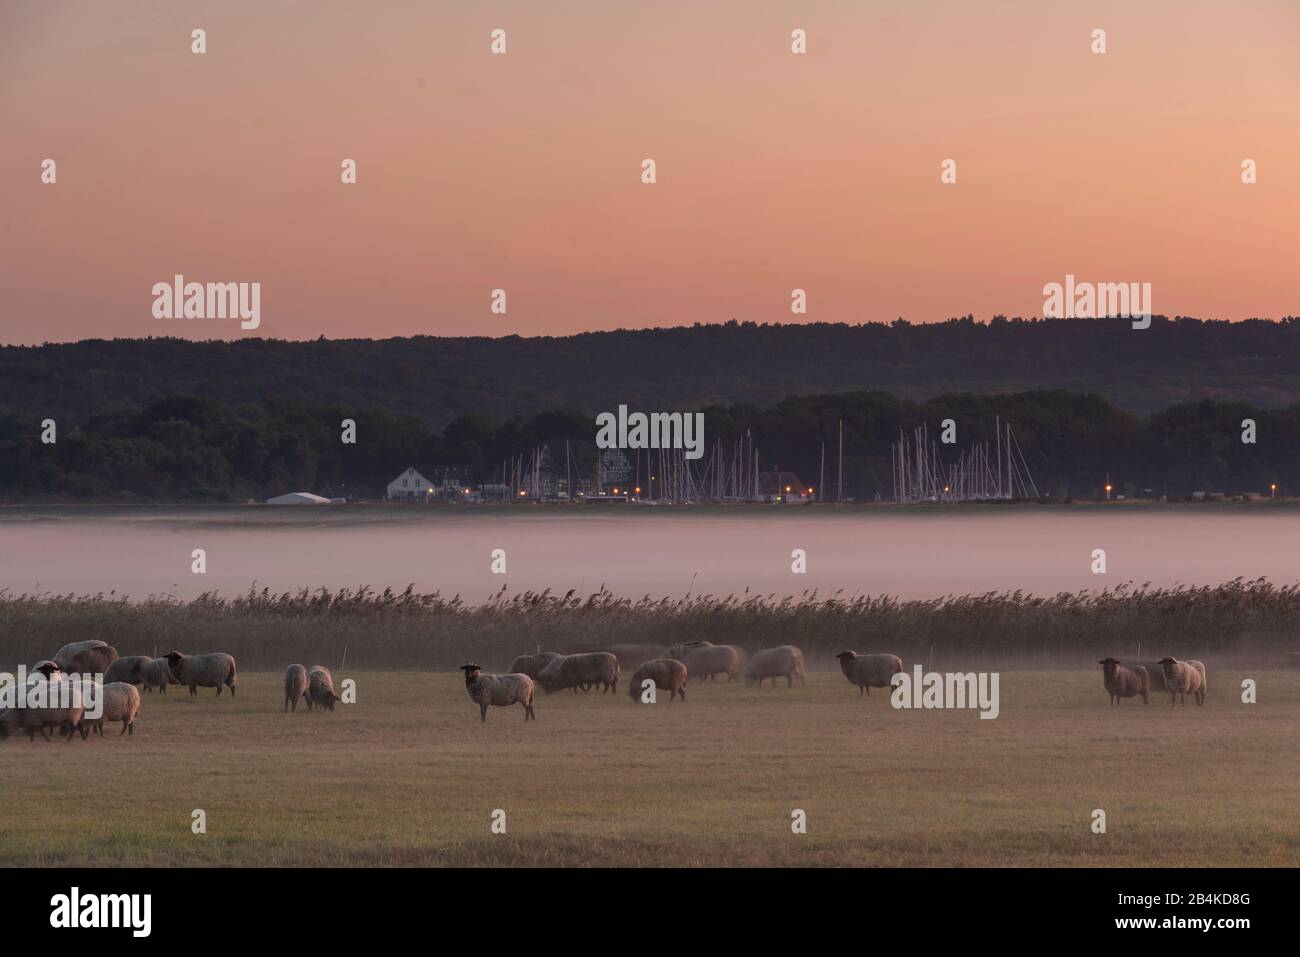 Germania, Mecklenburg-Vorpommern, Hiddensee, vista di un prato con pecore, velo nebbia, monastero del porto, barche a vela. Foto Stock